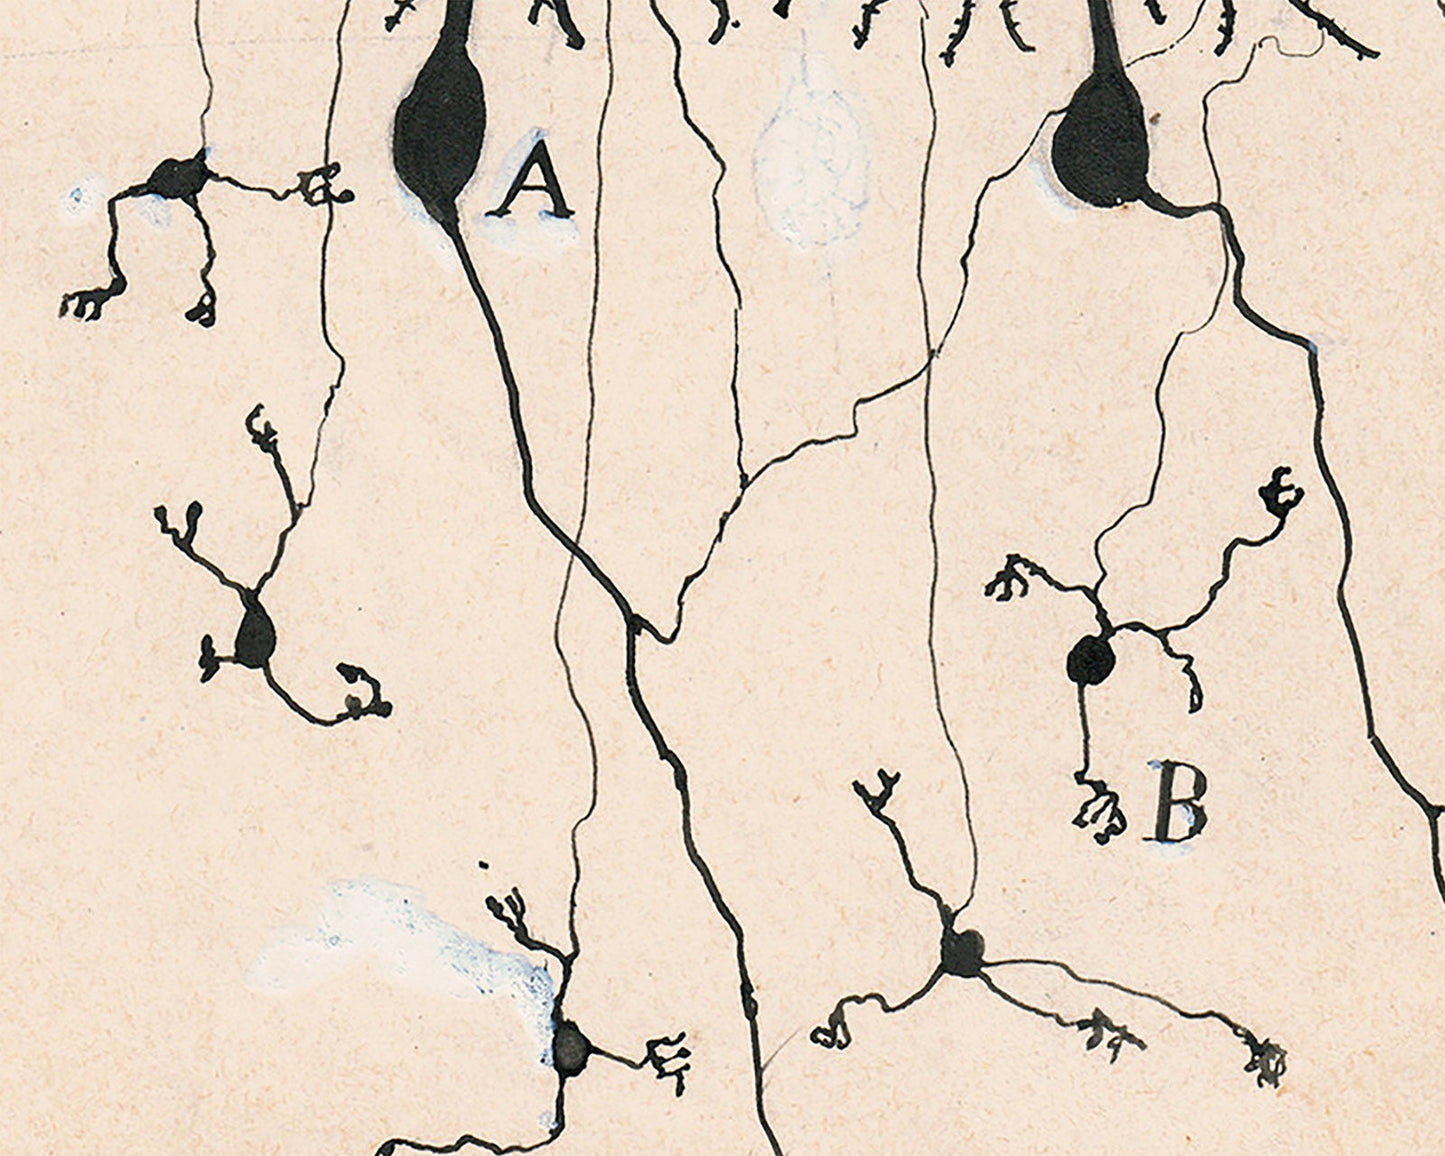 Vintage neuron drawing No. 3 by Santiago Ramón y Cajal